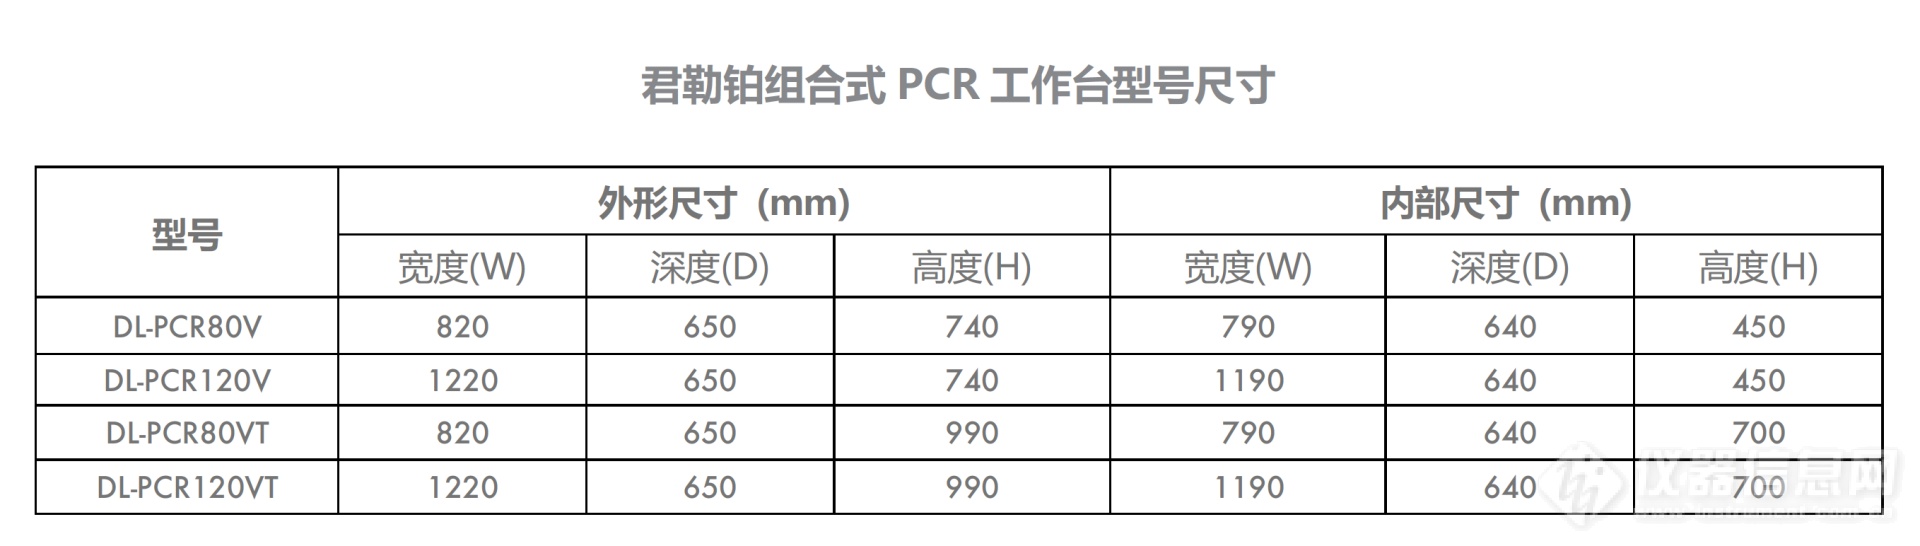 组合式PCR工作台尺寸.png